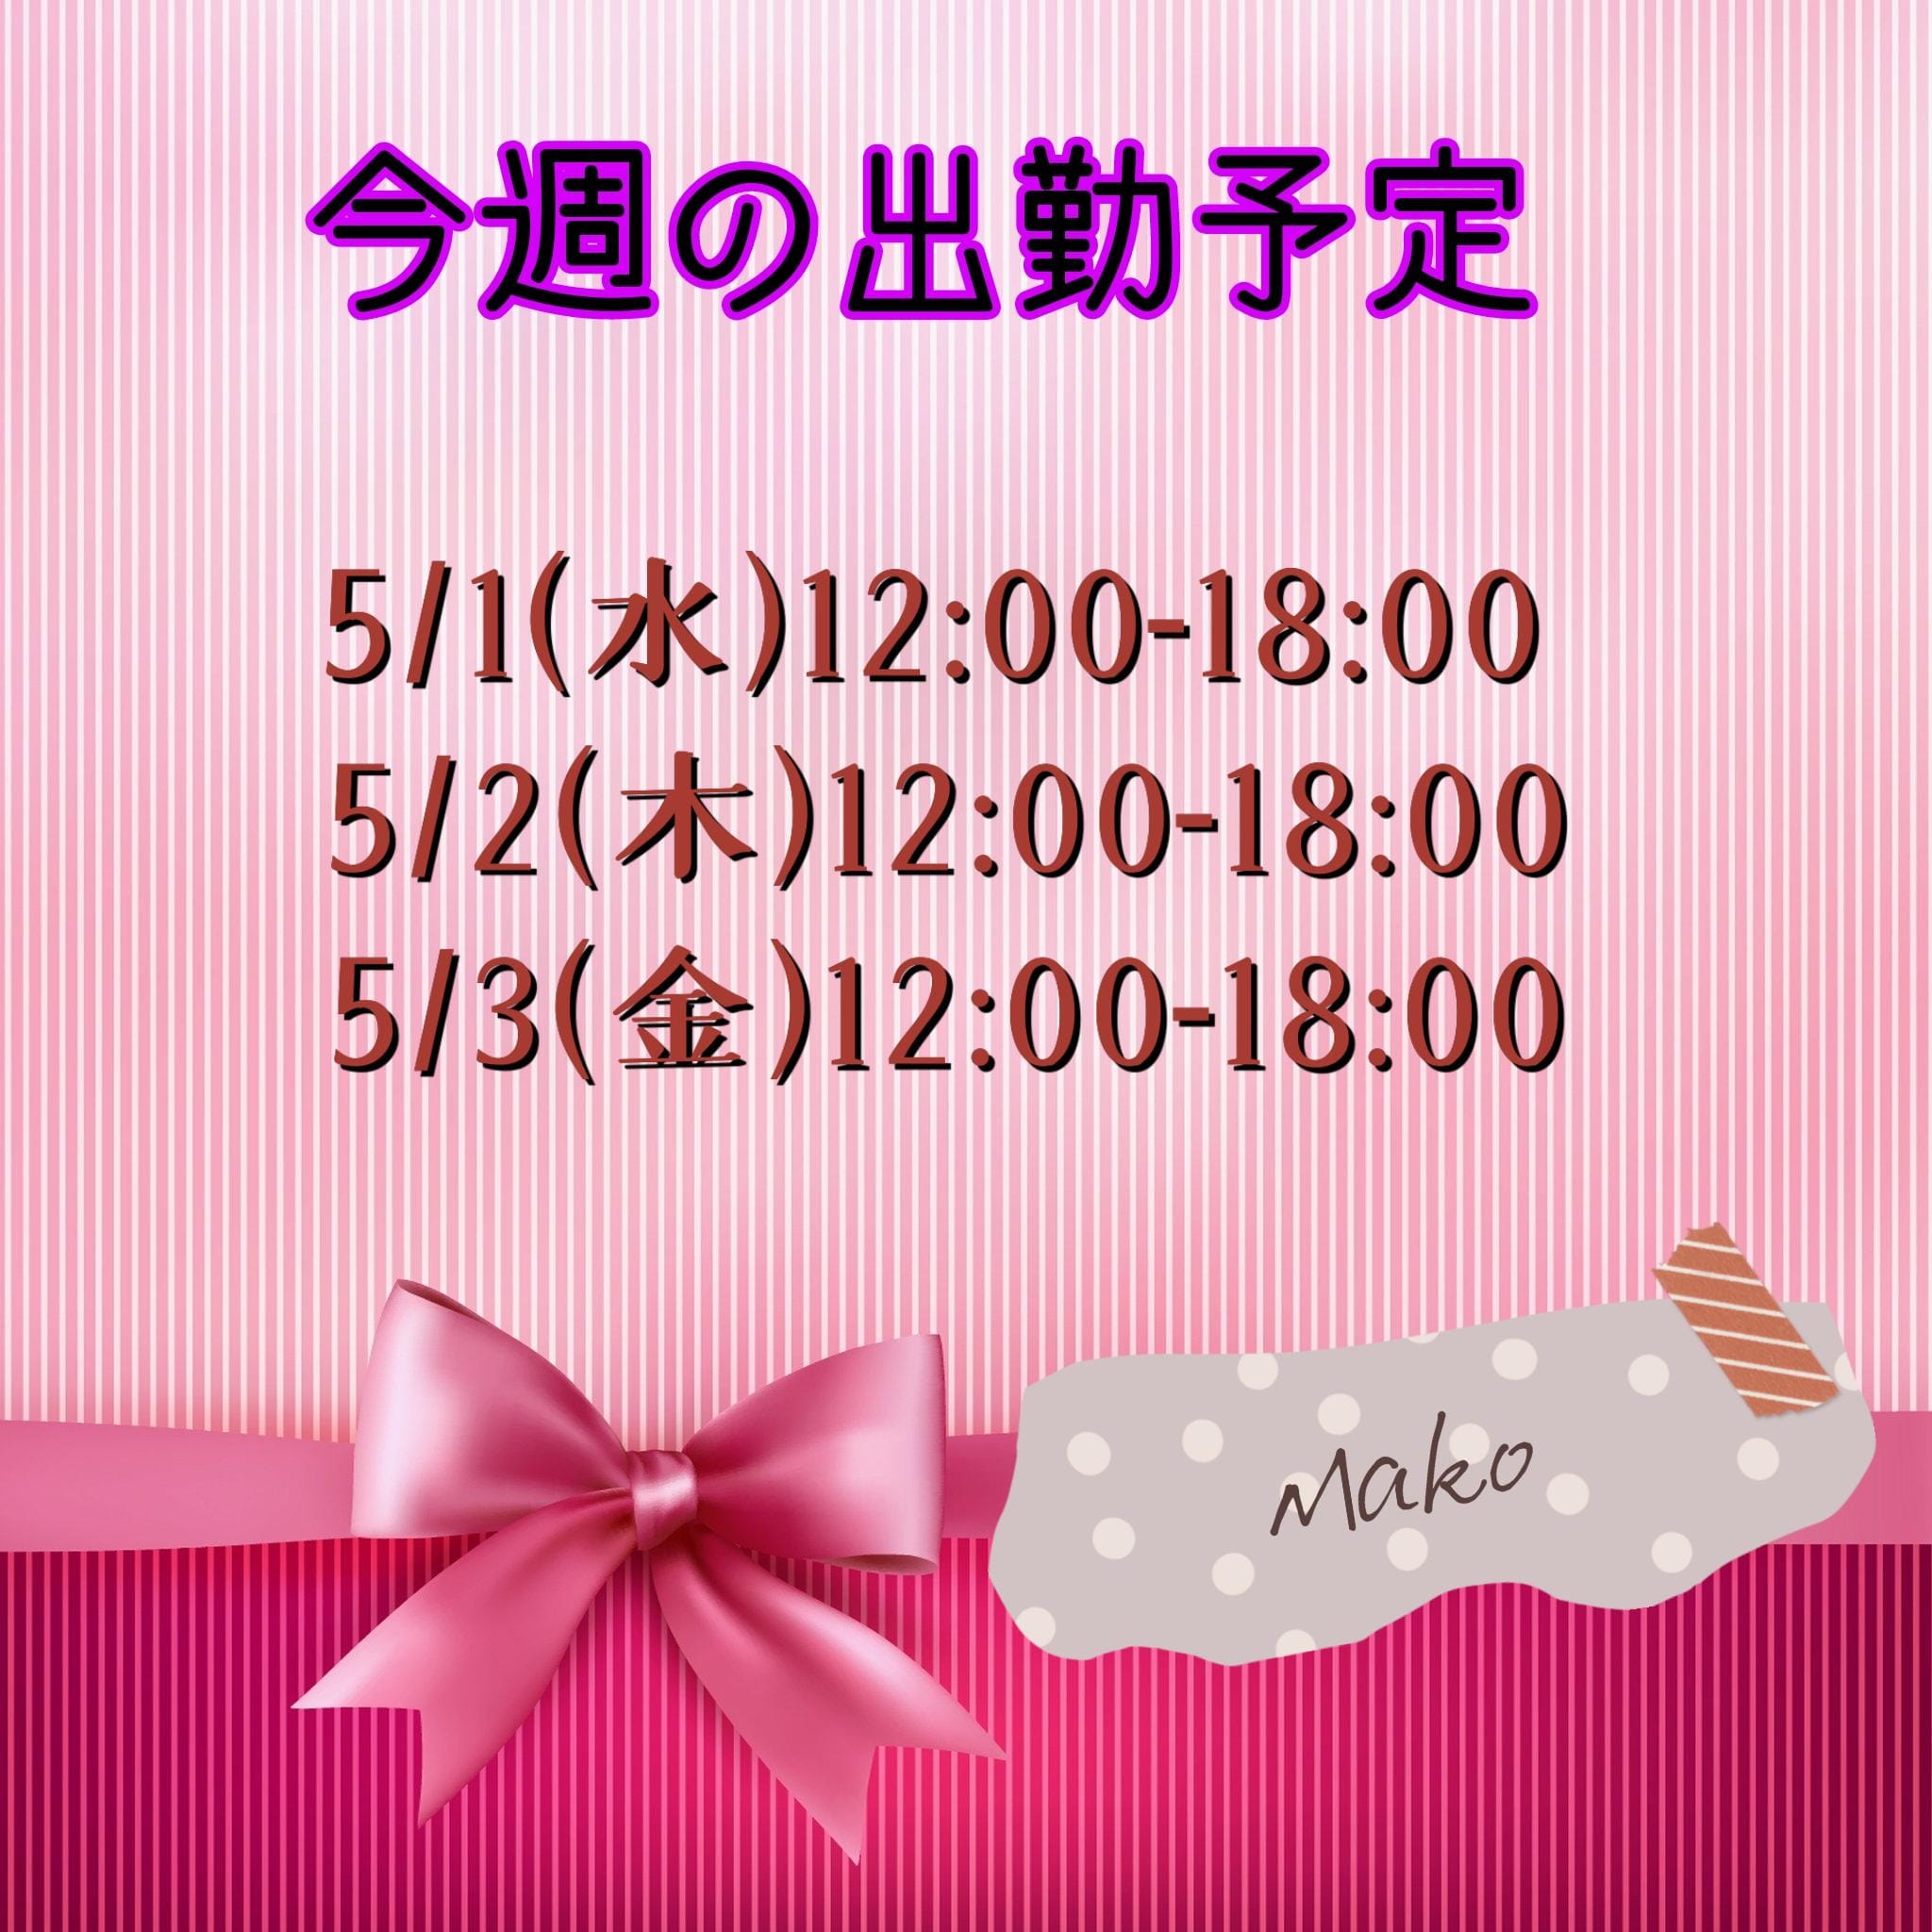 「4.29(シフト)」04/29(月) 16:44 | Mako【まこ】の写メ